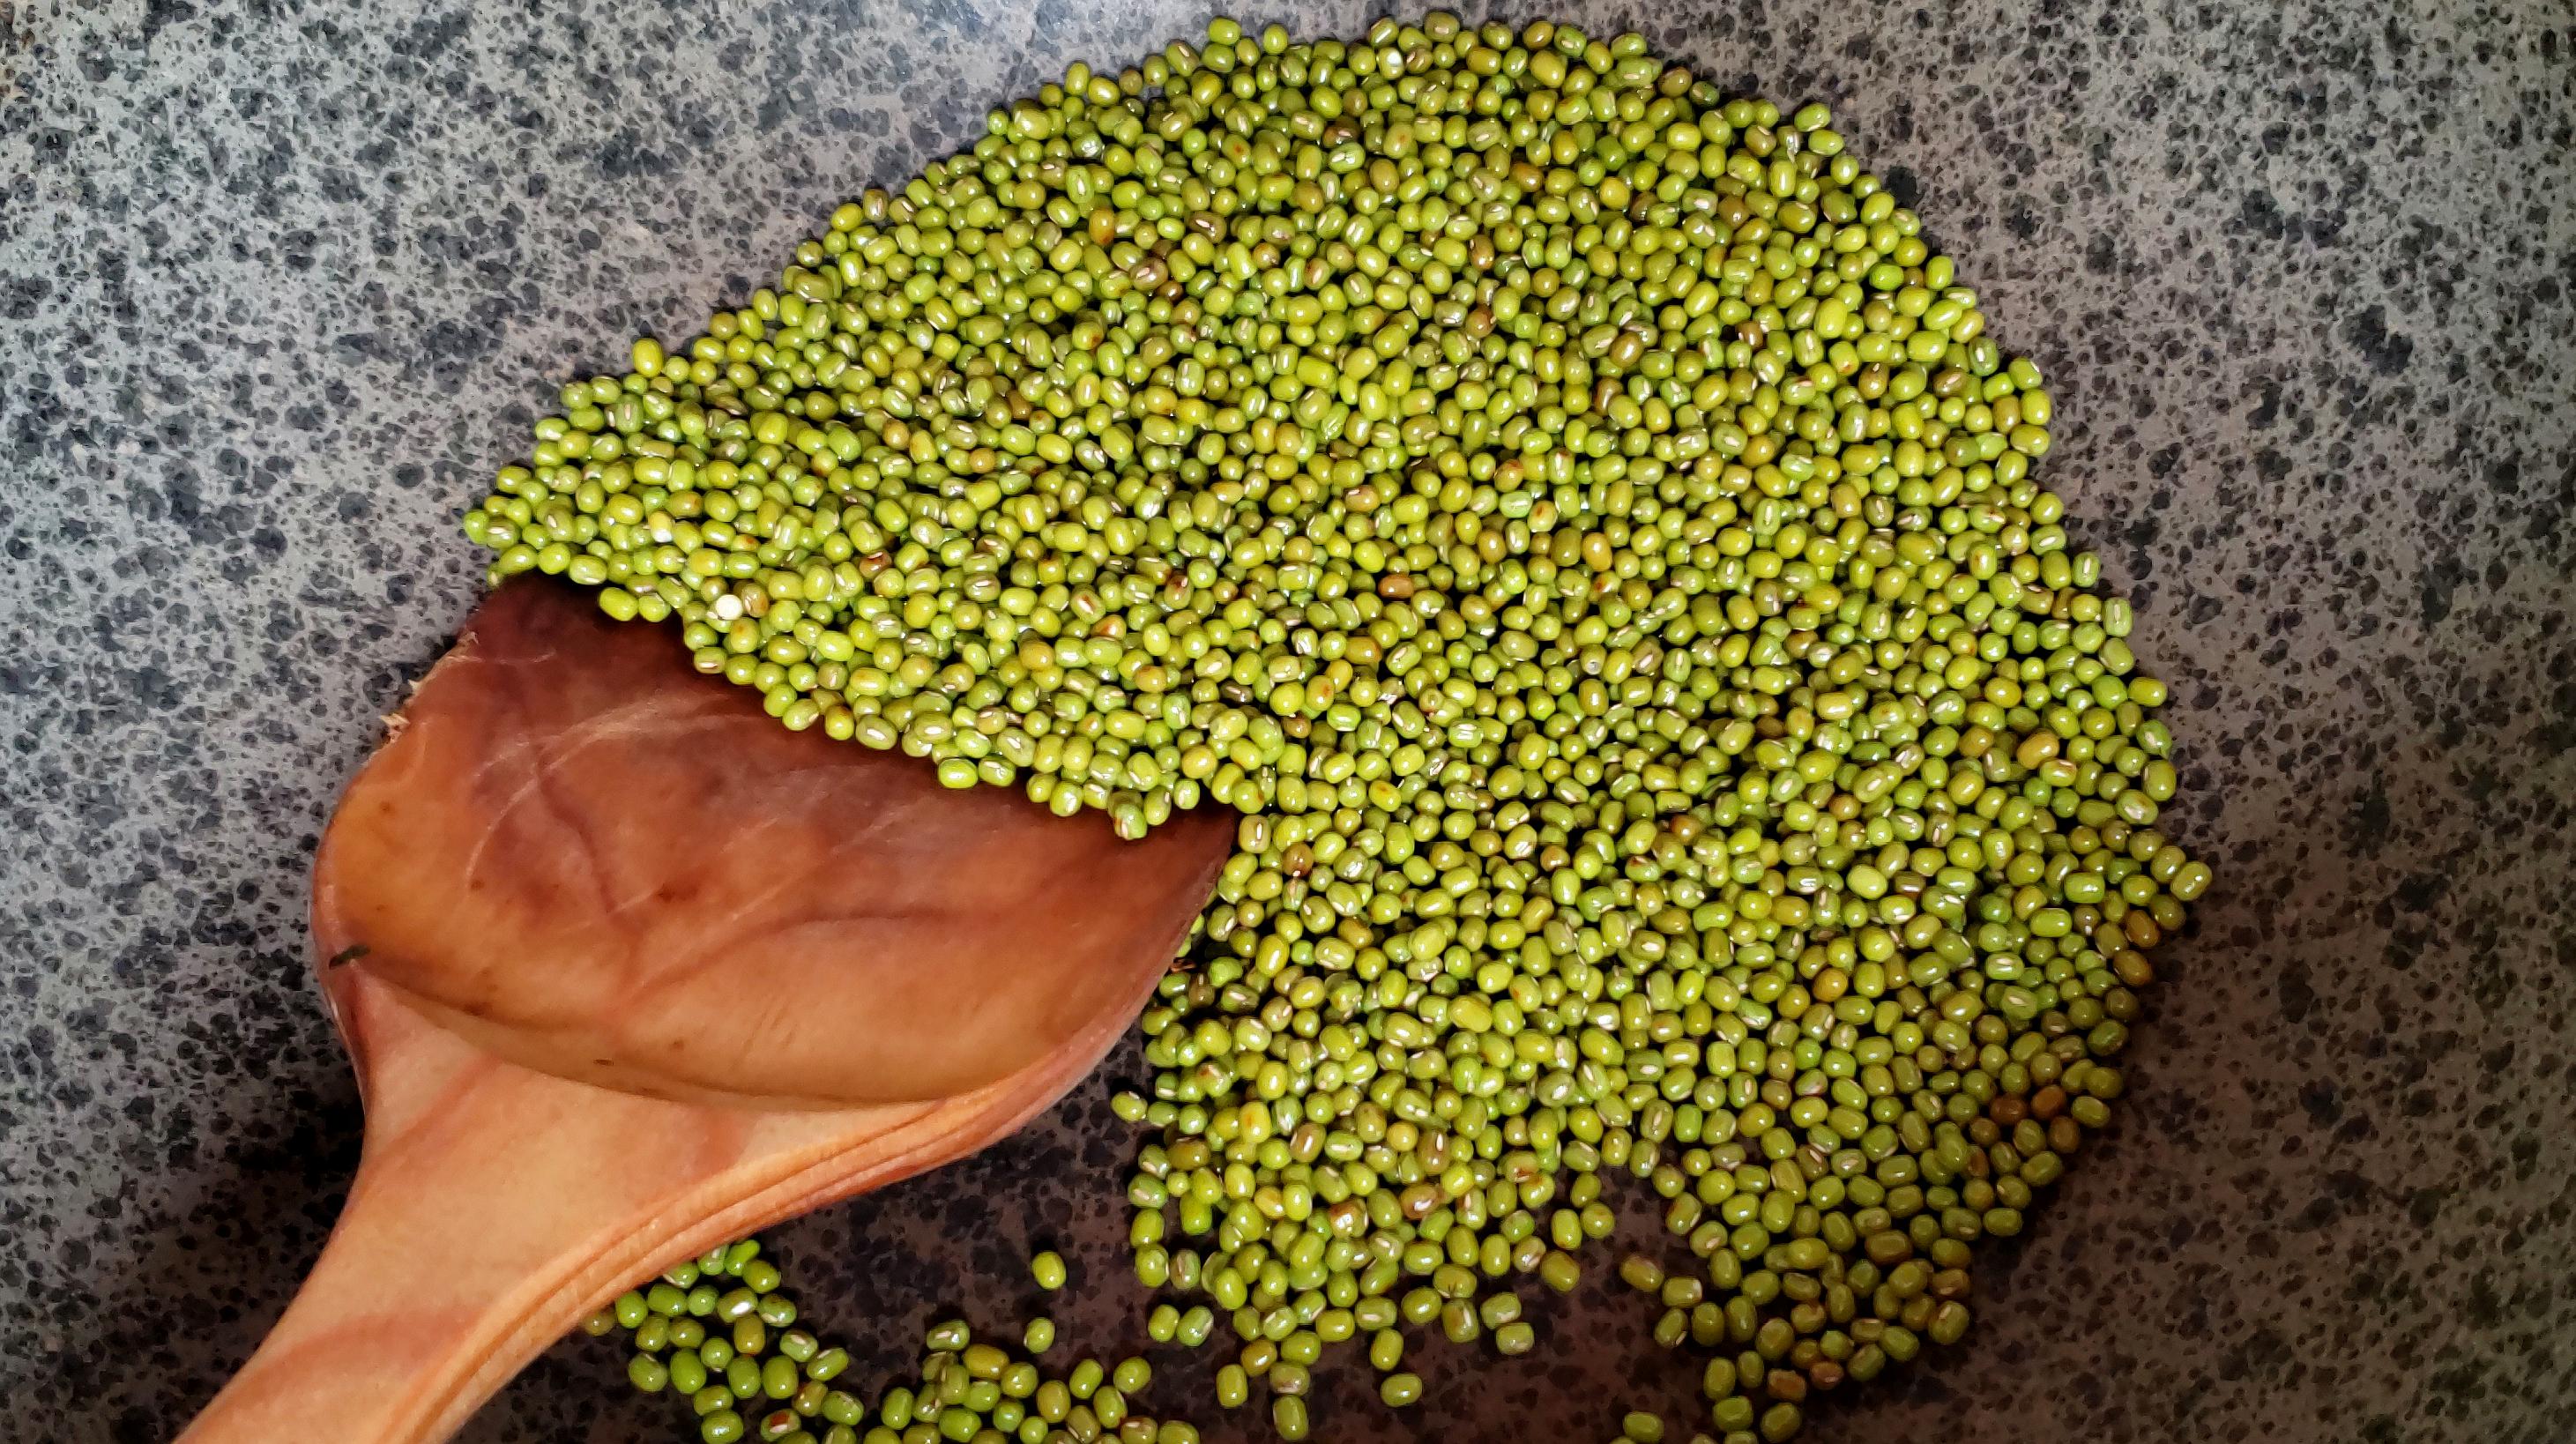 灌木上绿豆的紫花 法式豆子在田地上生长 花豆 快照Bean切片 库存照片 - 图片 包括有 自然, 陆运: 134887174